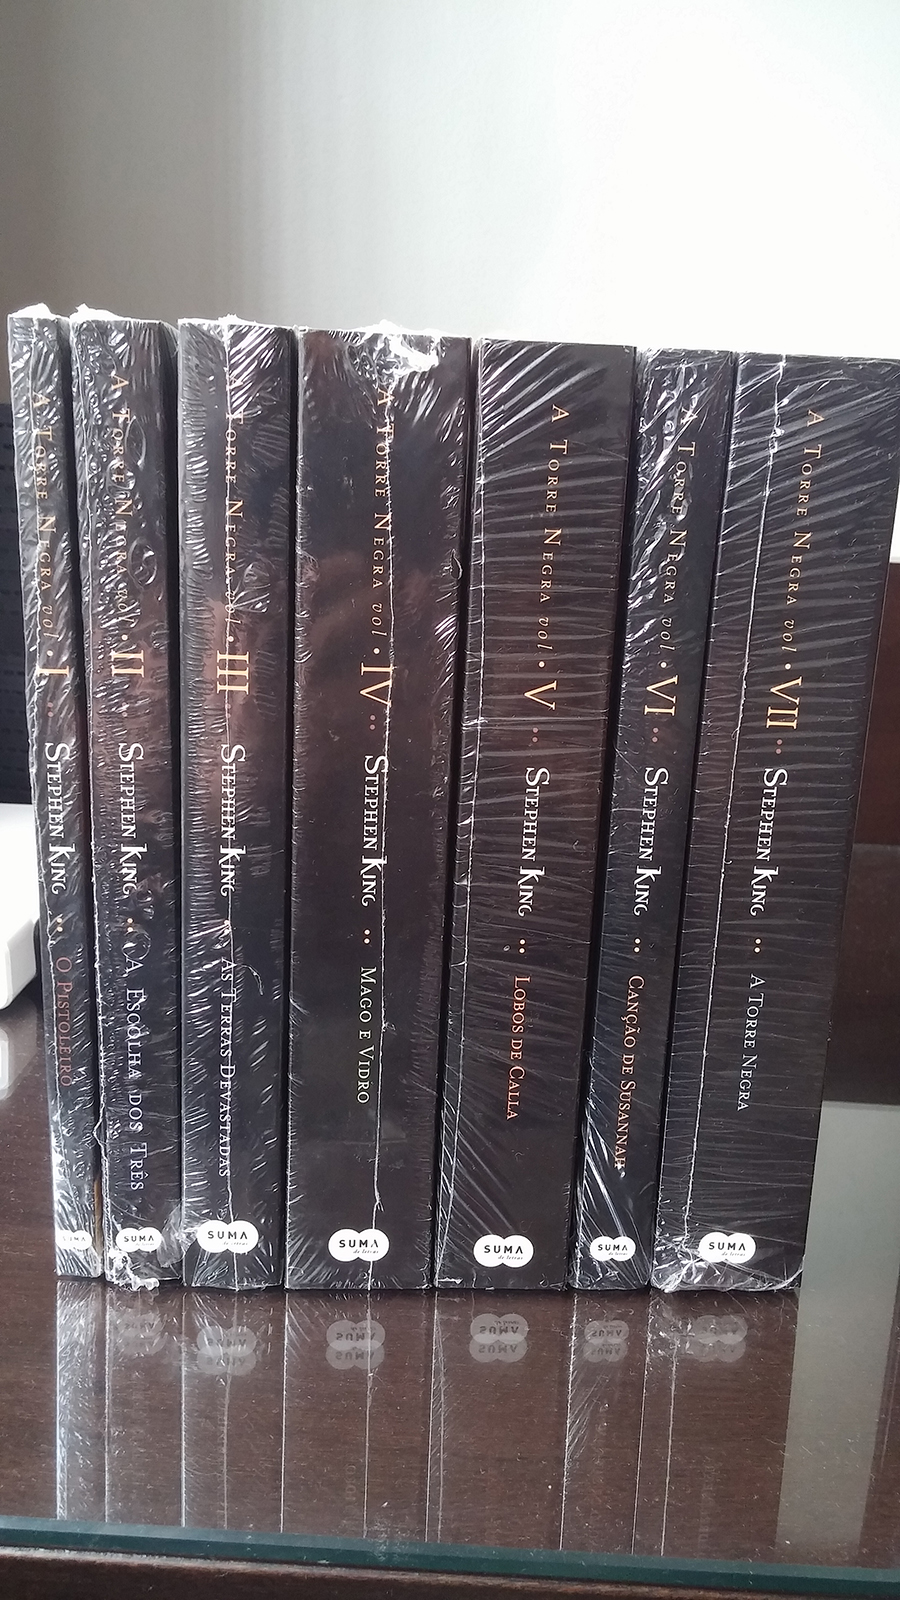 Lobos De Calla - Série Torre Negra, Volume 5: New